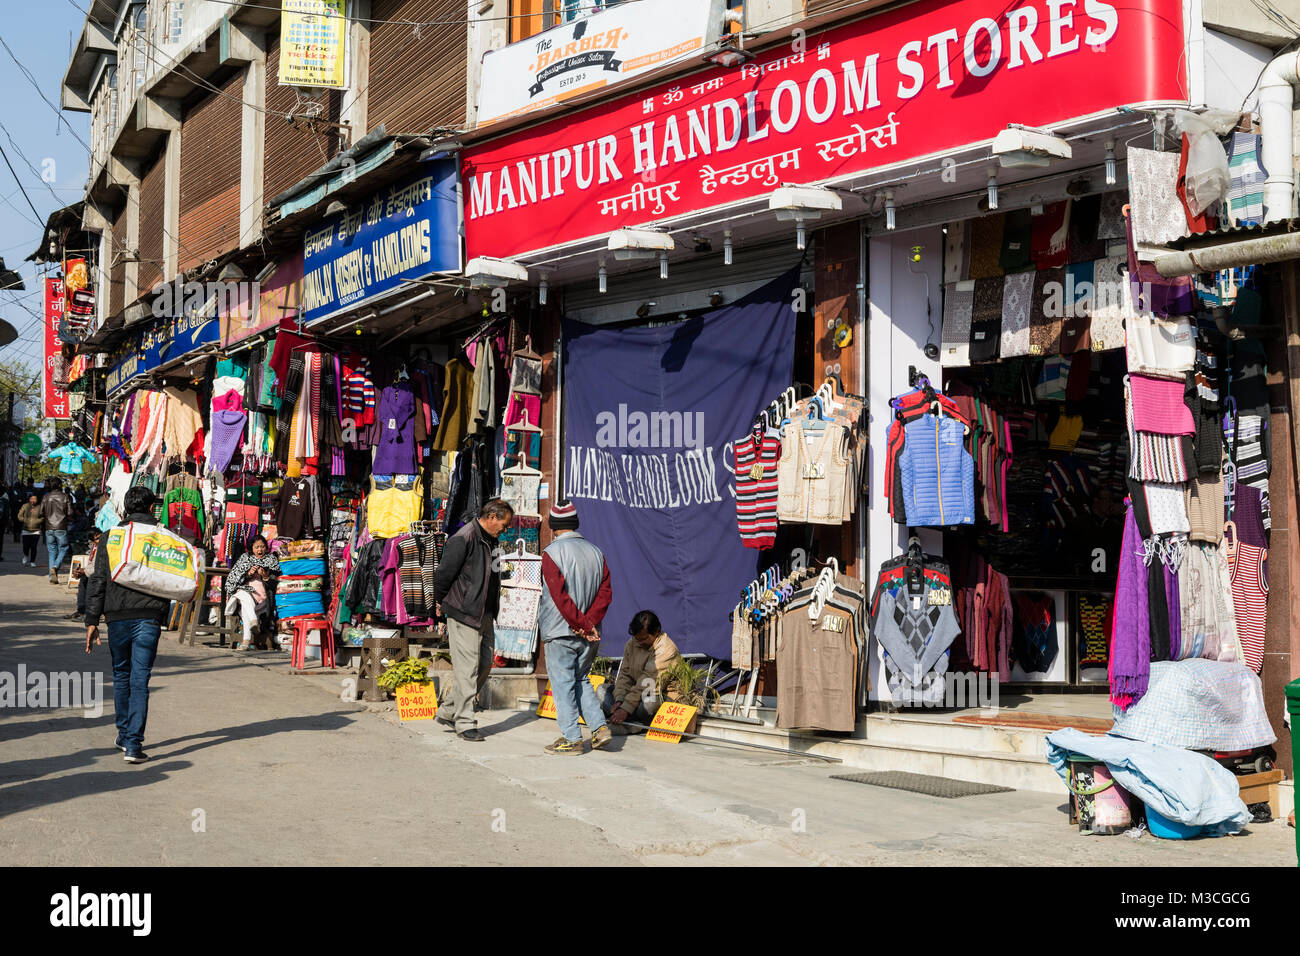 DARJEELING, INDIA, March 6, 2017: Shopping street in downtown Darjeeling Stock Photo